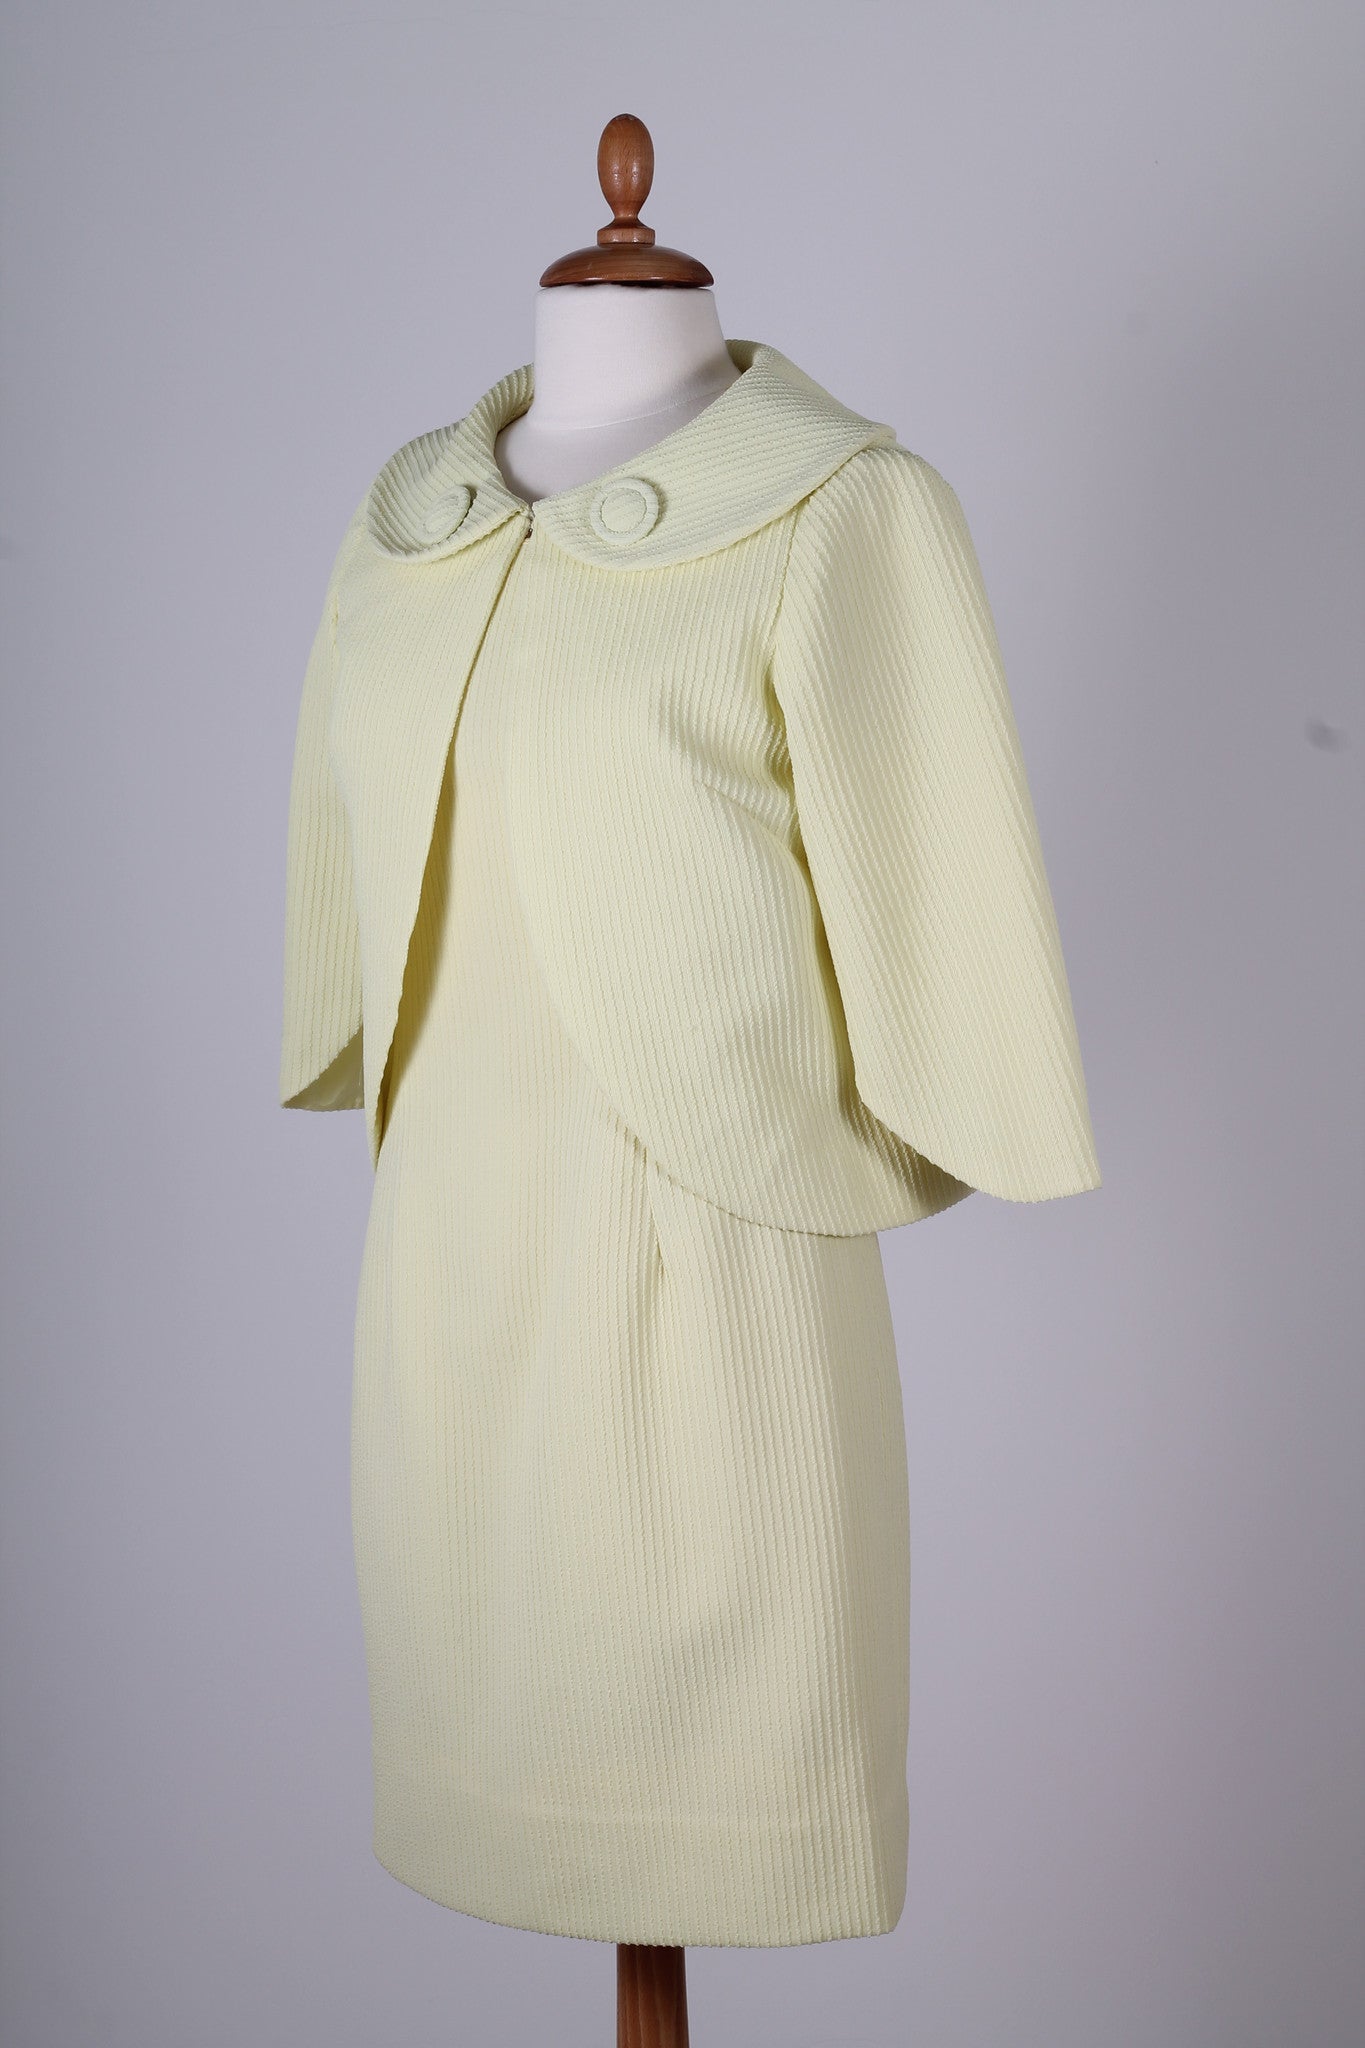 Vintage tøj - Lysegul cocktailkjole med jakke 1960. S-M - Vintage kjoler fra 1960'erne - Vintage Divine - 5